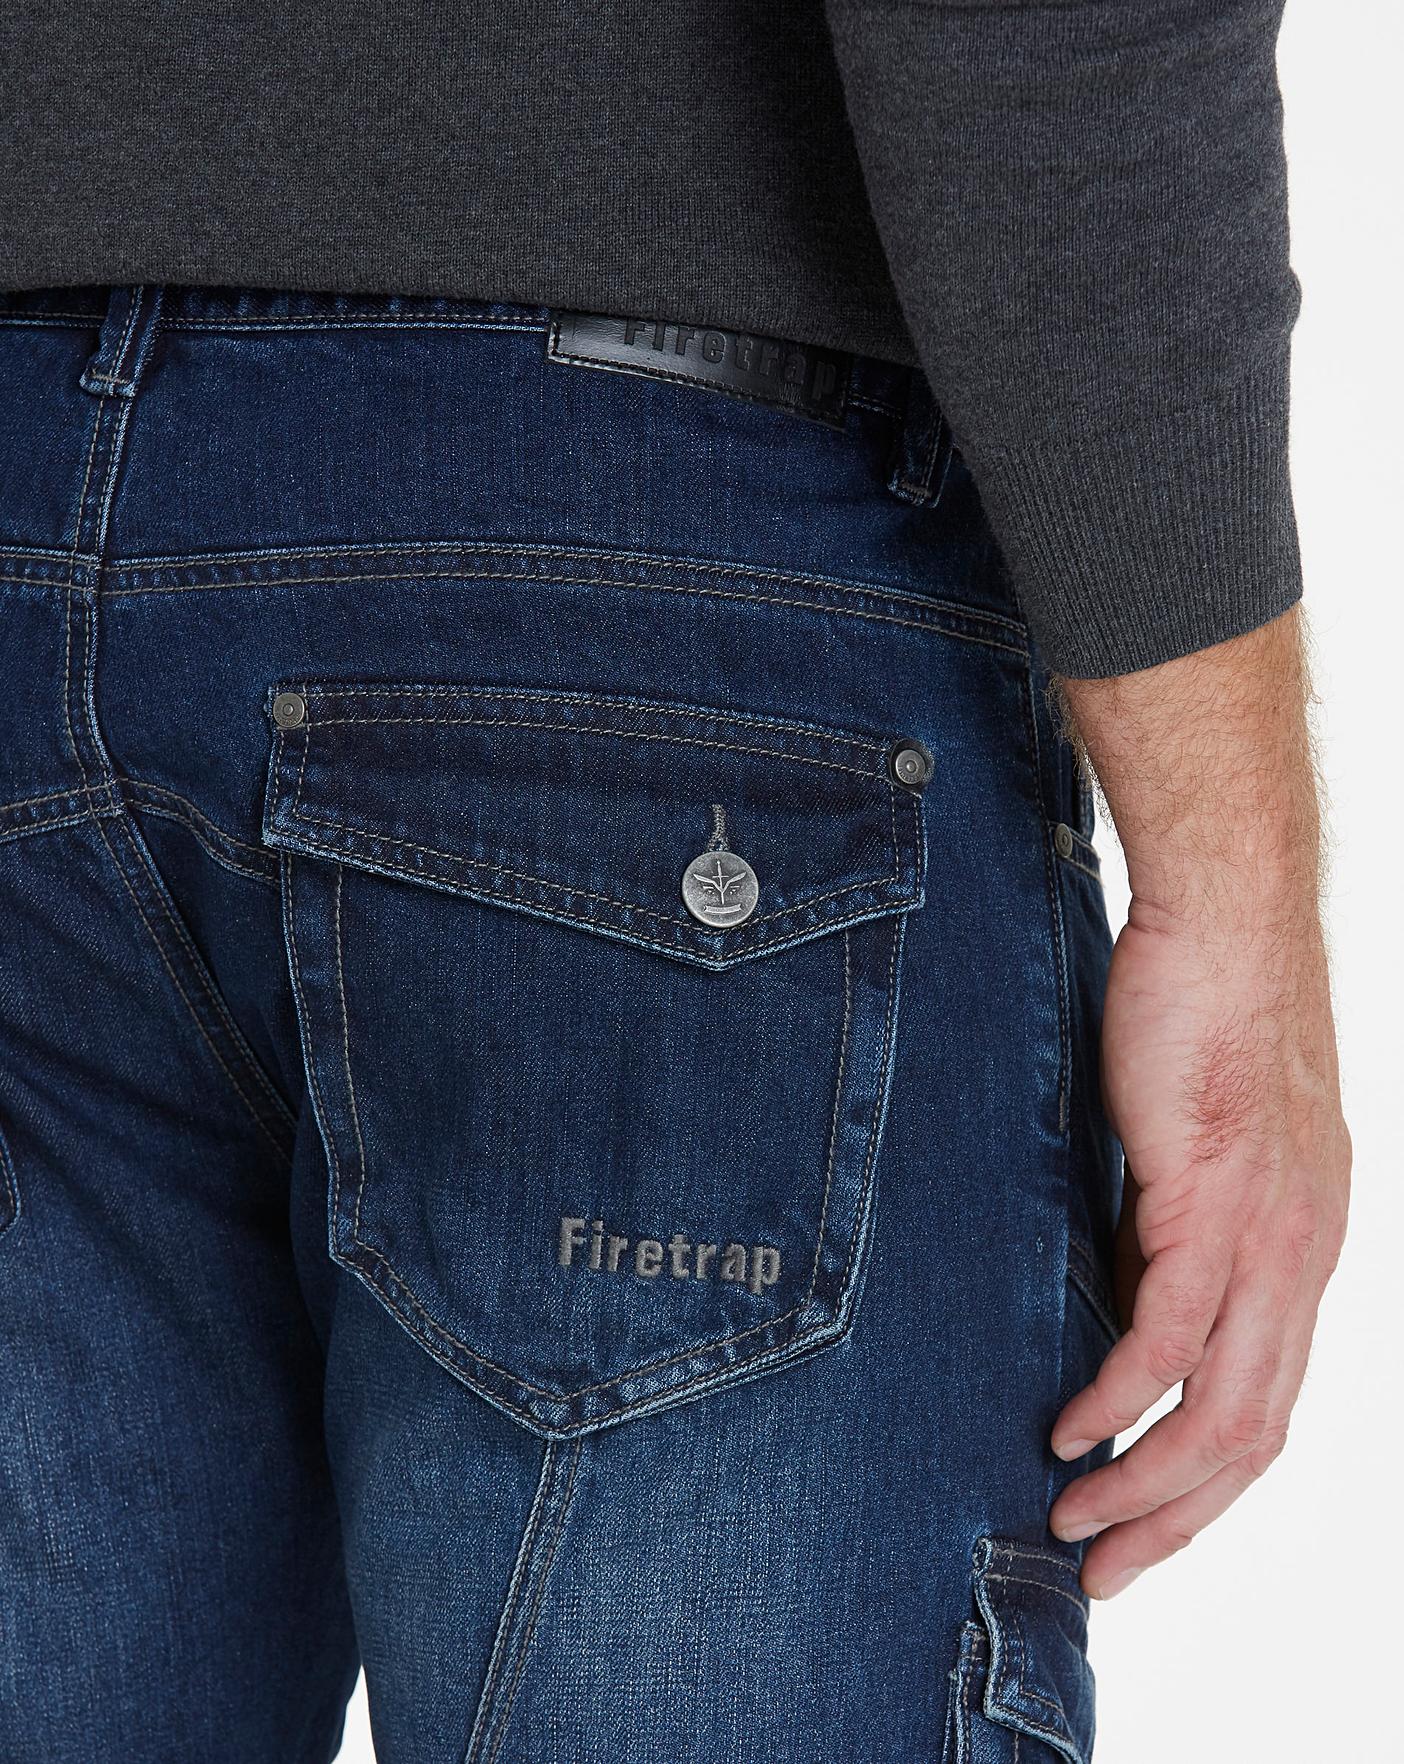 firetrap jeans uk